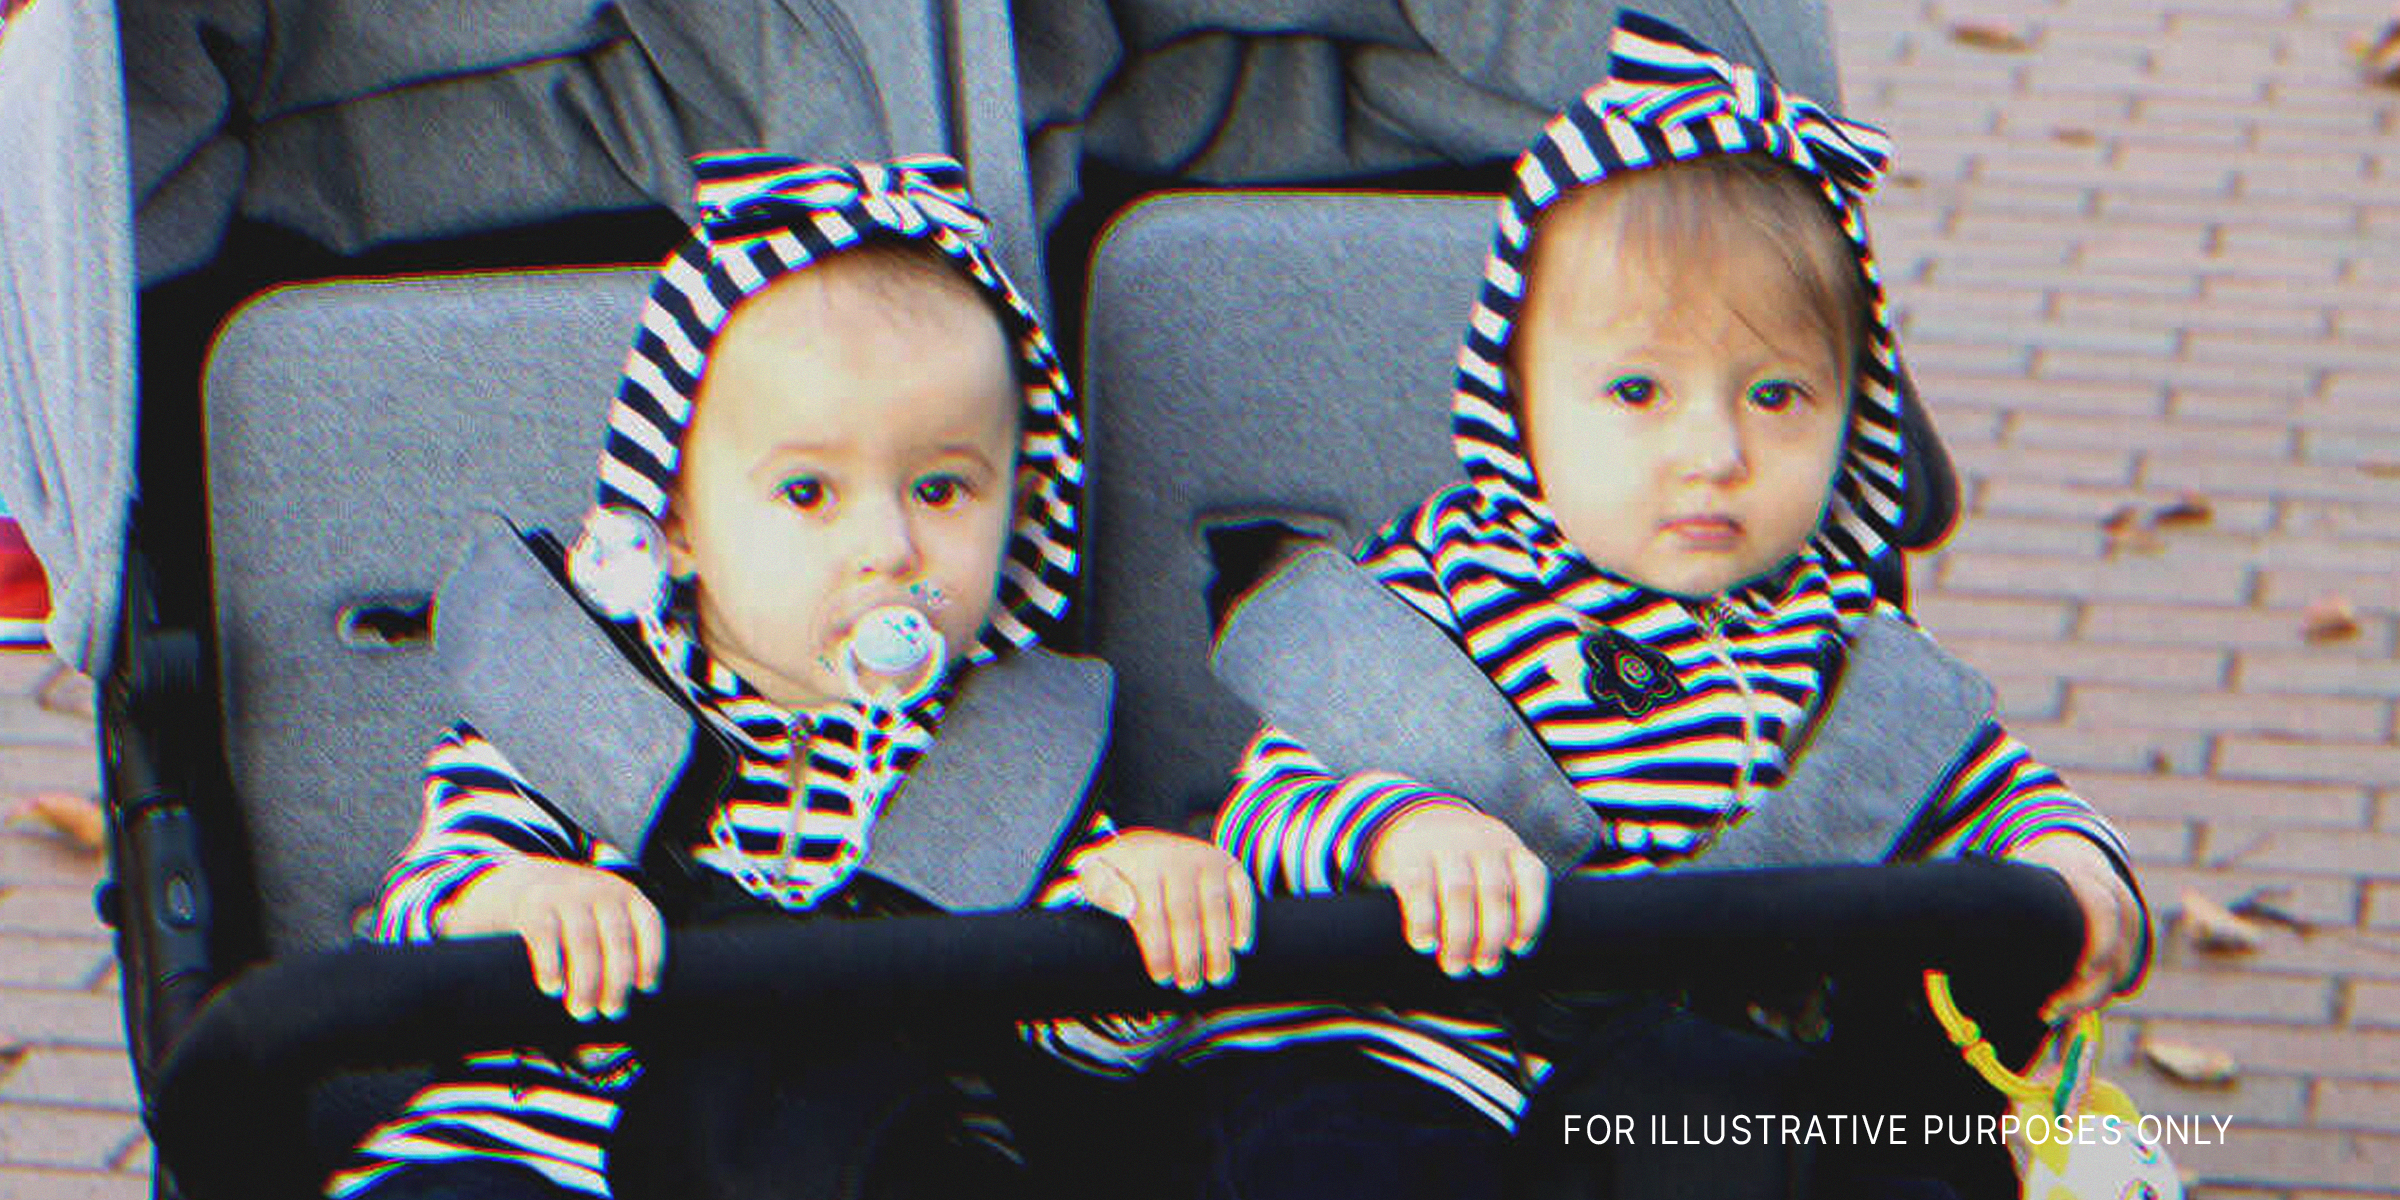 Ein Foto von Zwillingen auf einem Kinderwagen | Quelle: Shutterstock